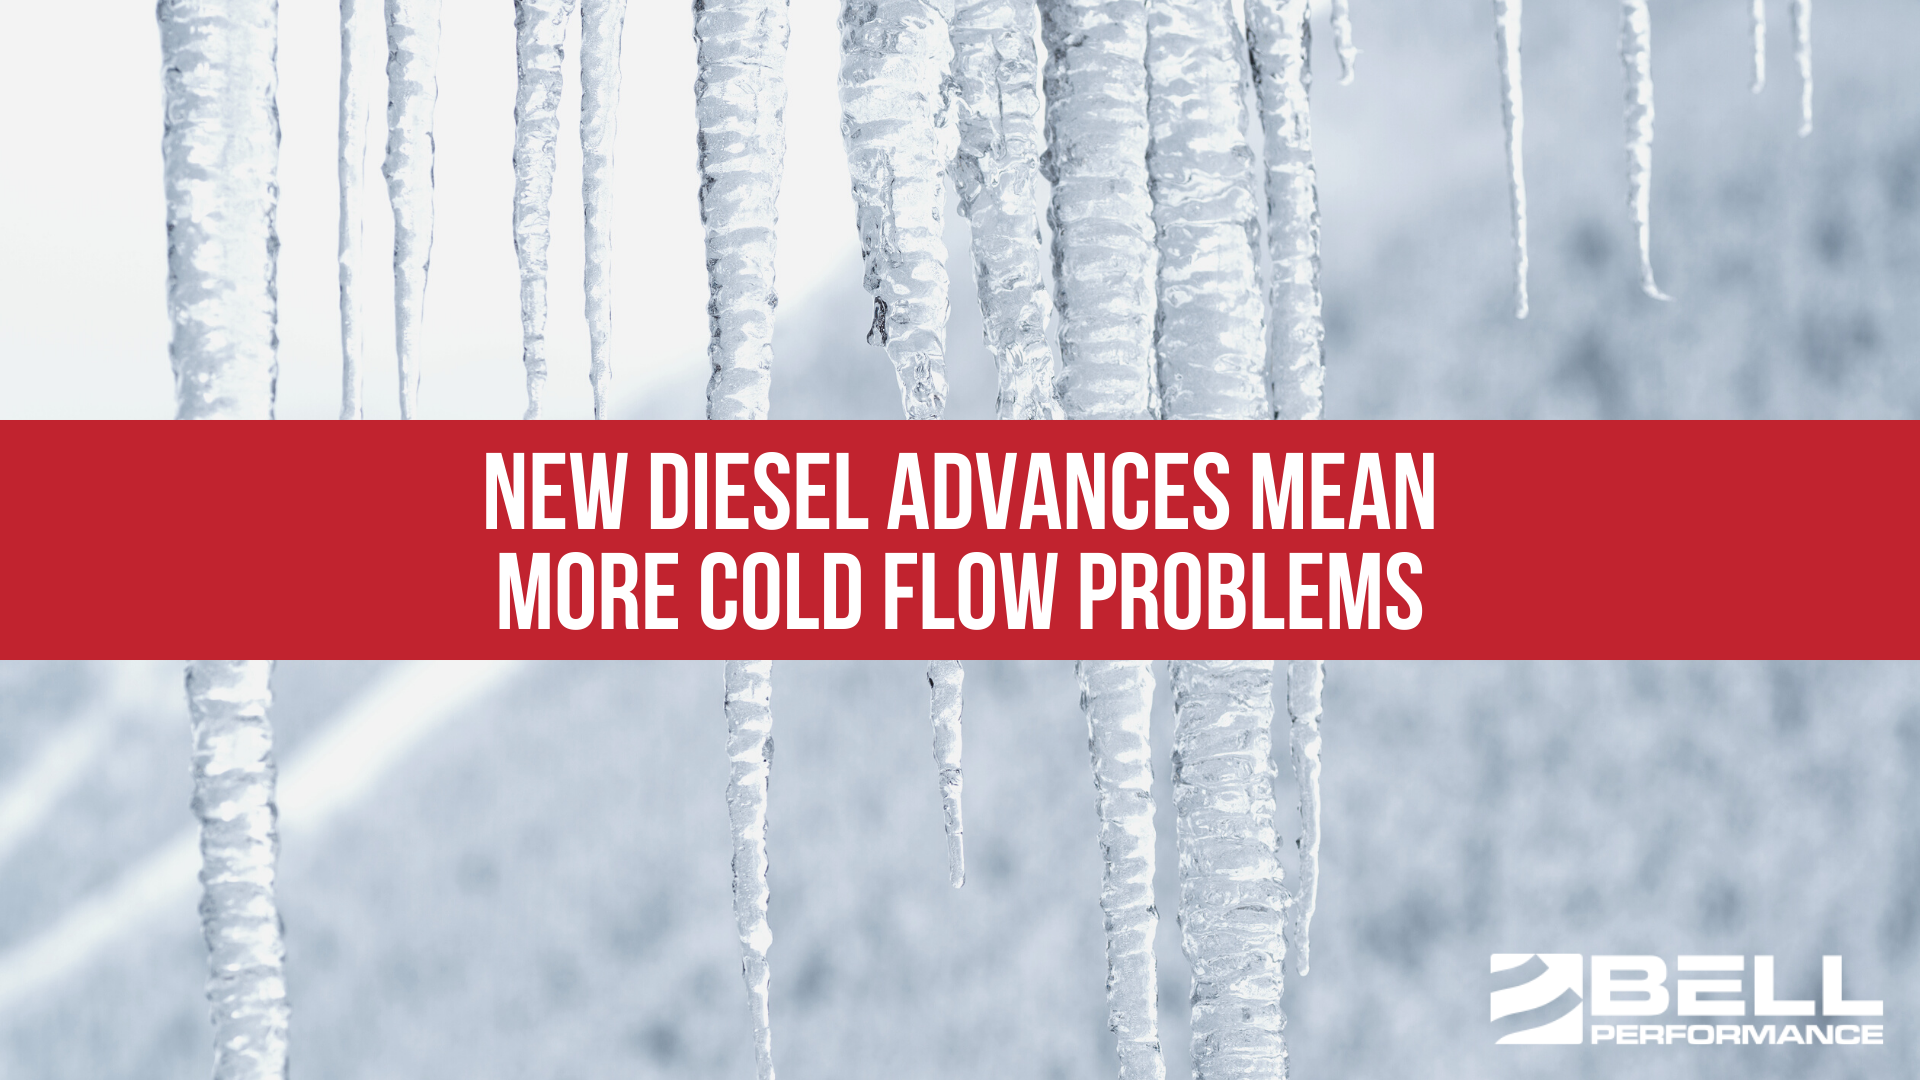 New diesel advances mean more cold flow problems